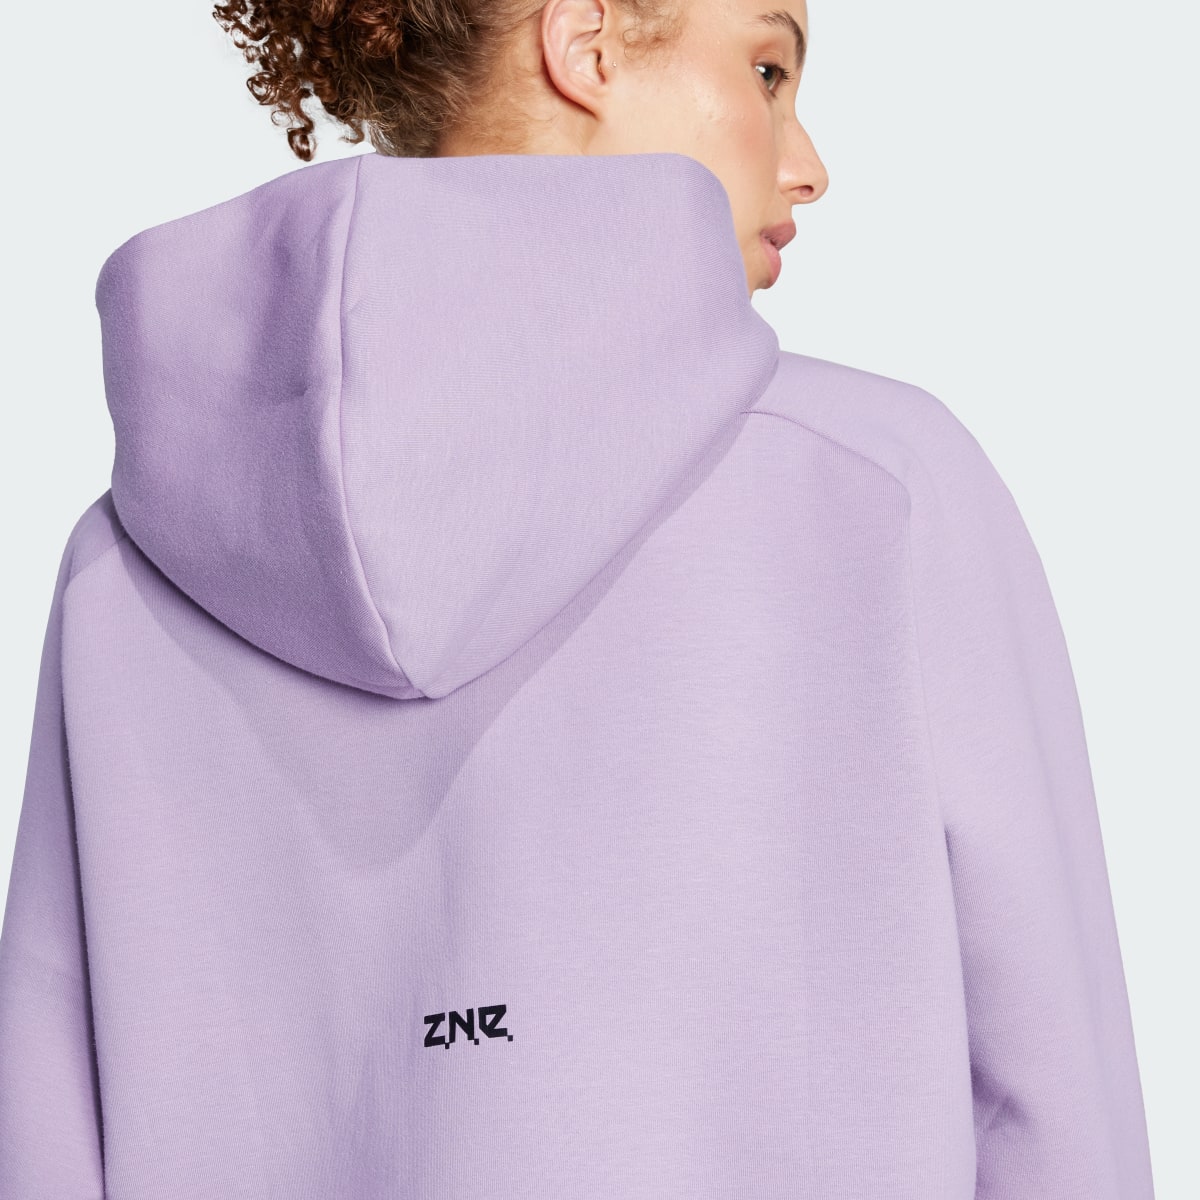 Adidas Z.N.E. Full-Zip Hoodie. 7